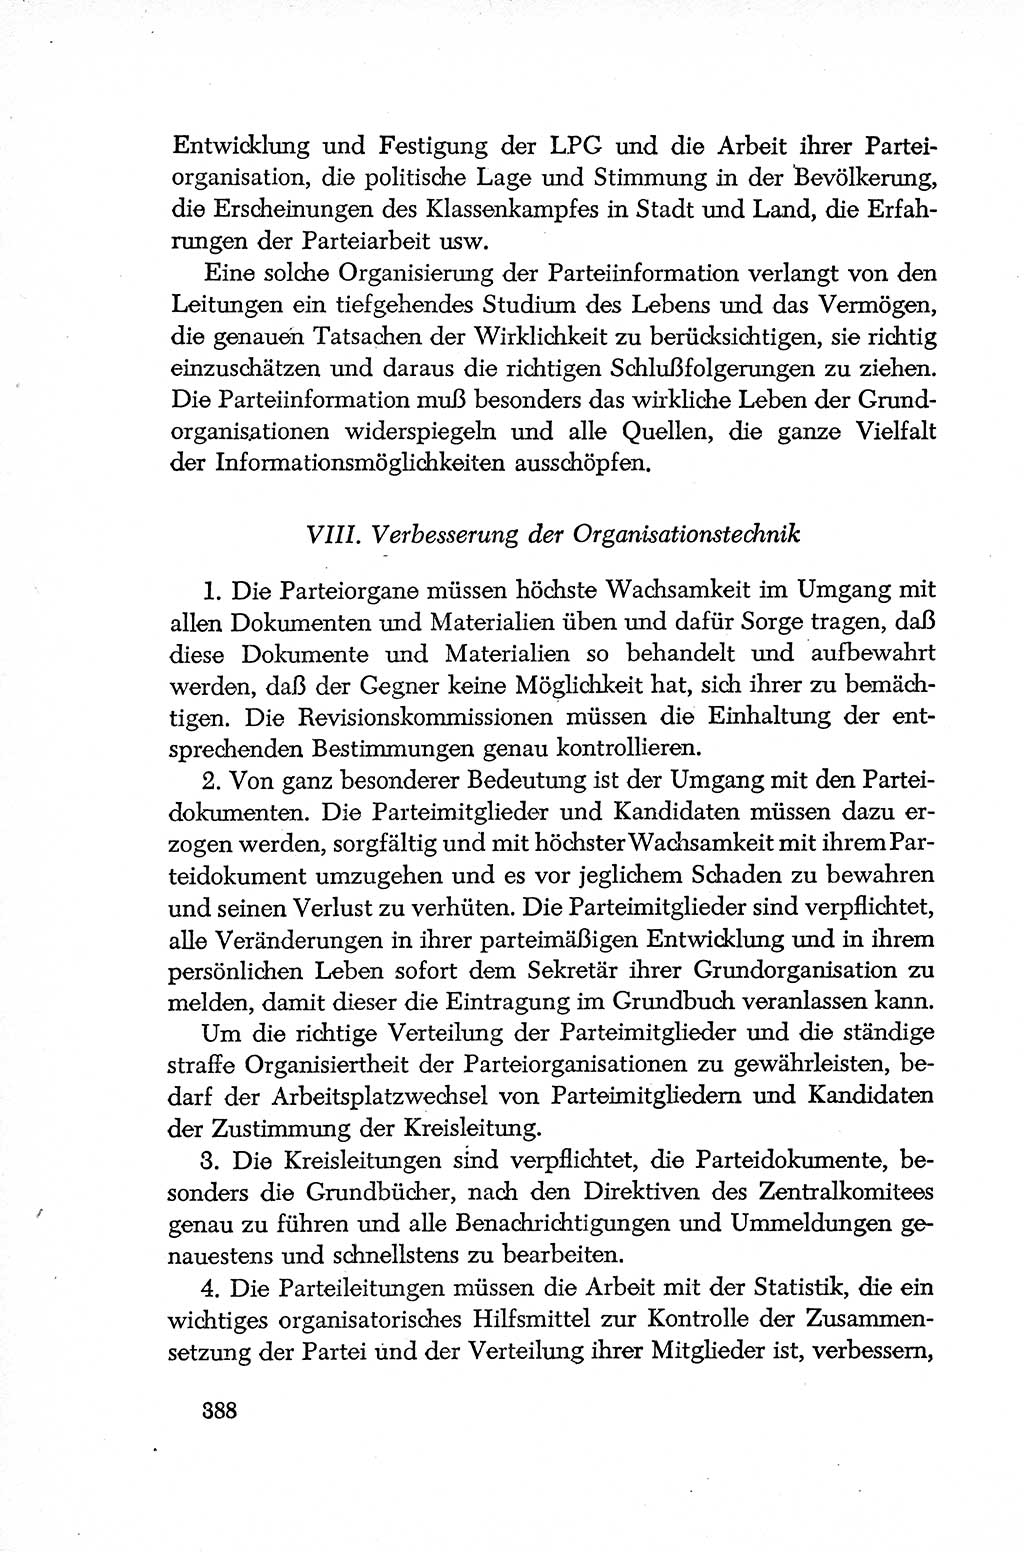 Dokumente der Sozialistischen Einheitspartei Deutschlands (SED) [Deutsche Demokratische Republik (DDR)] 1952-1953, Seite 388 (Dok. SED DDR 1952-1953, S. 388)